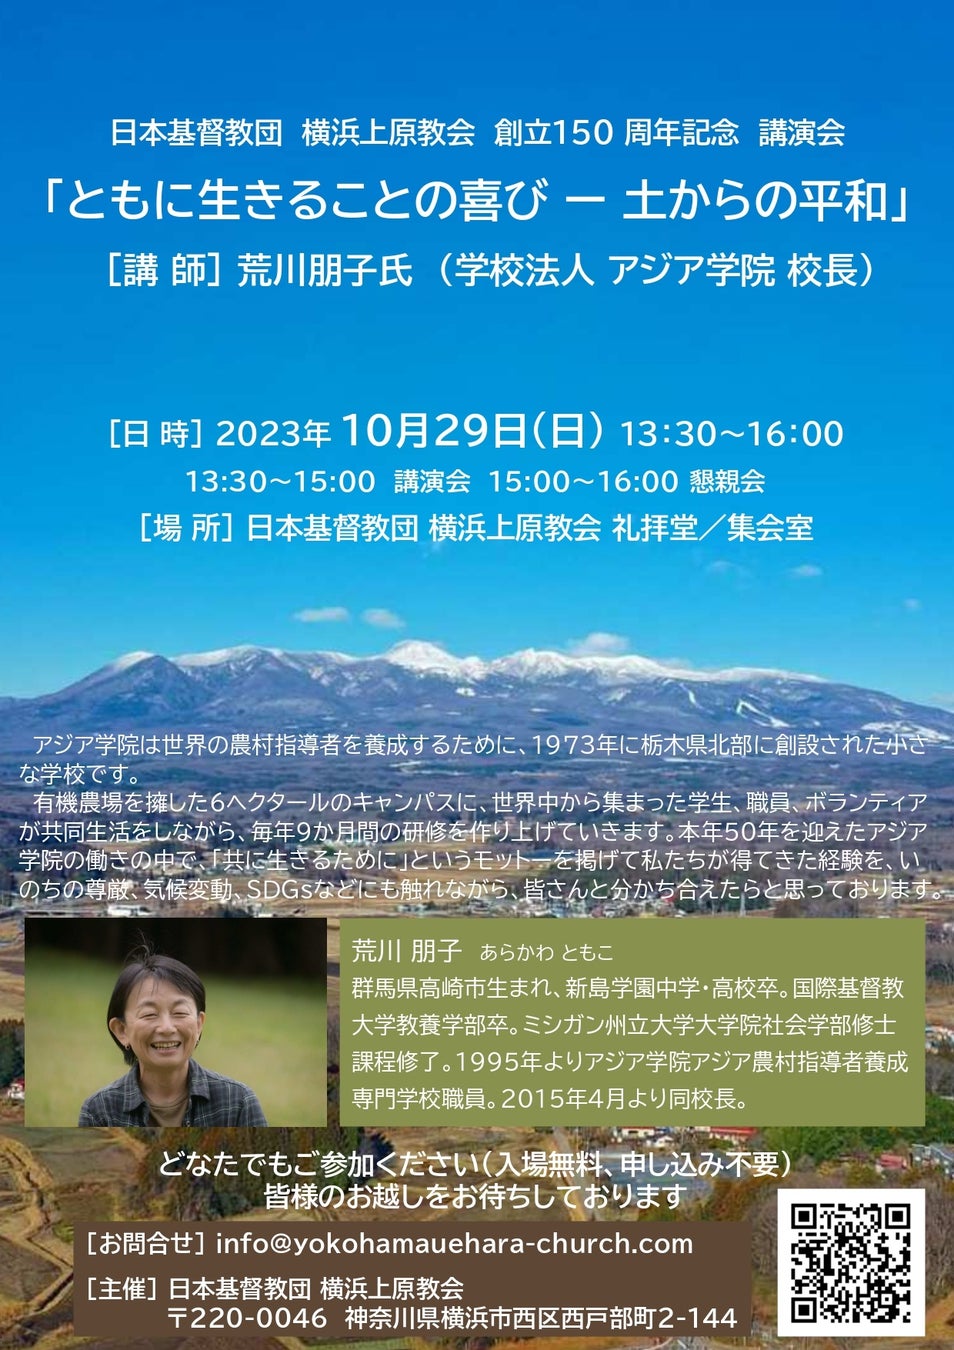 「いのちの尊厳、気候変動、SDGs」アジア学院荒川朋子校長講演会横浜で開催